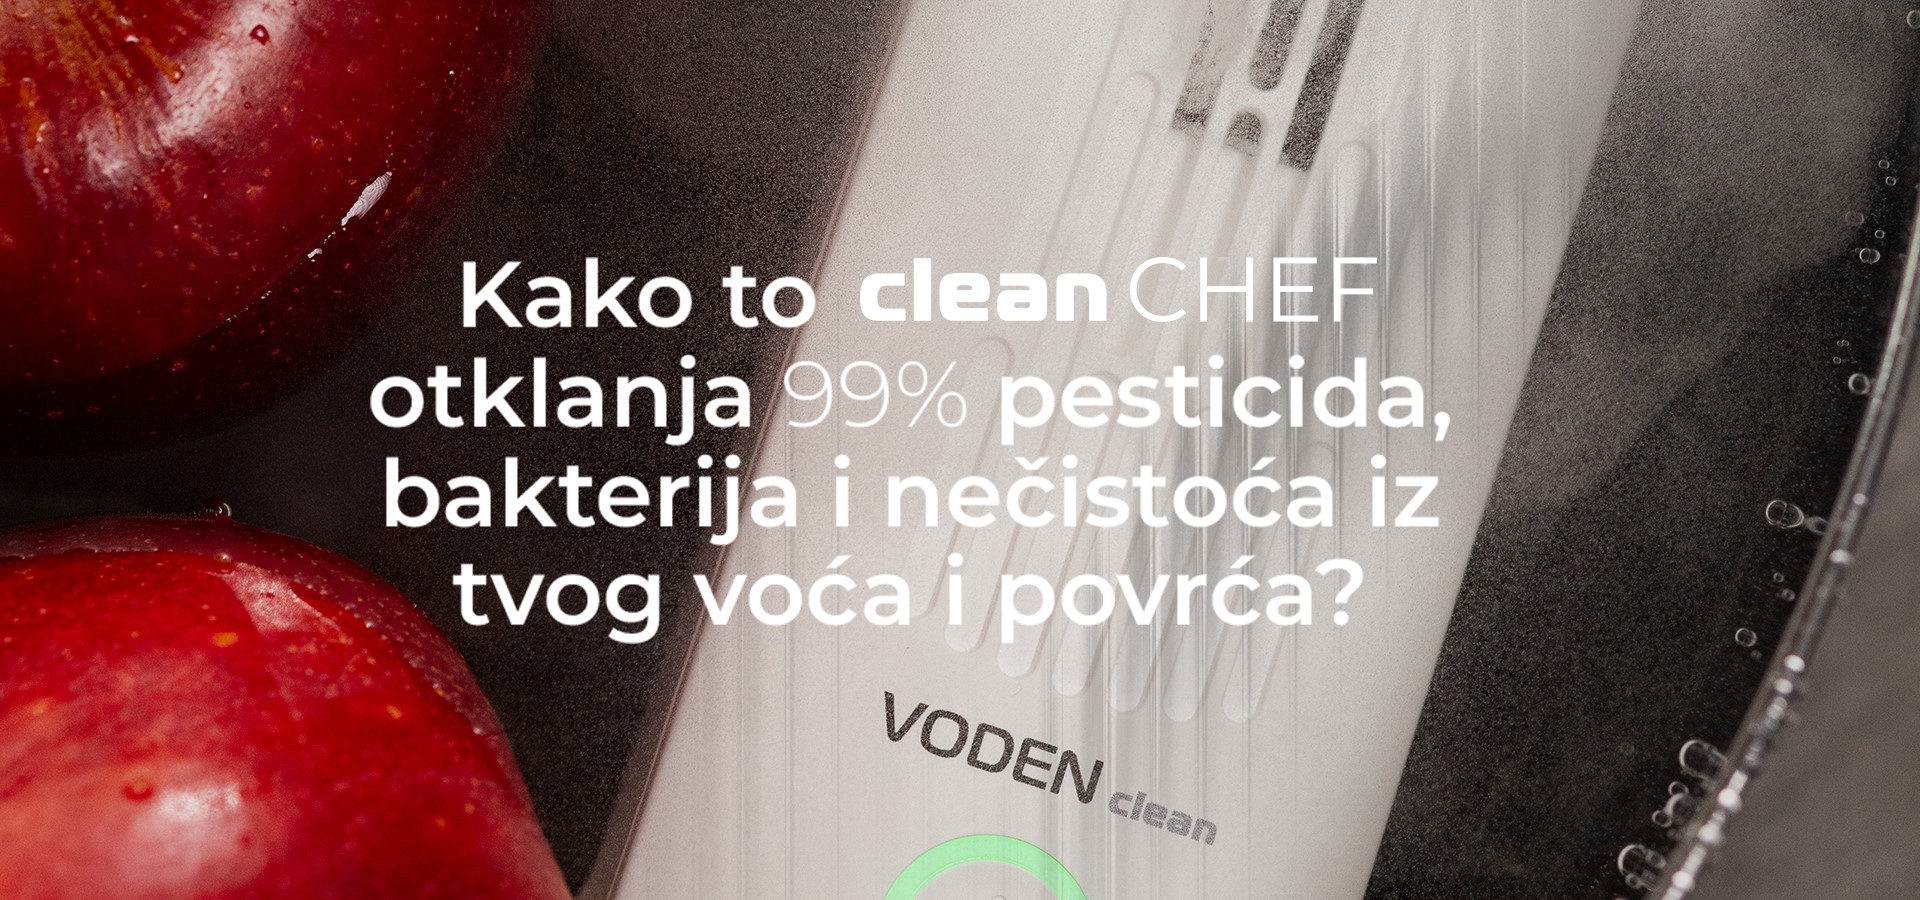 Voden Clean Chef smart sterilizator namirnica 2 landscape